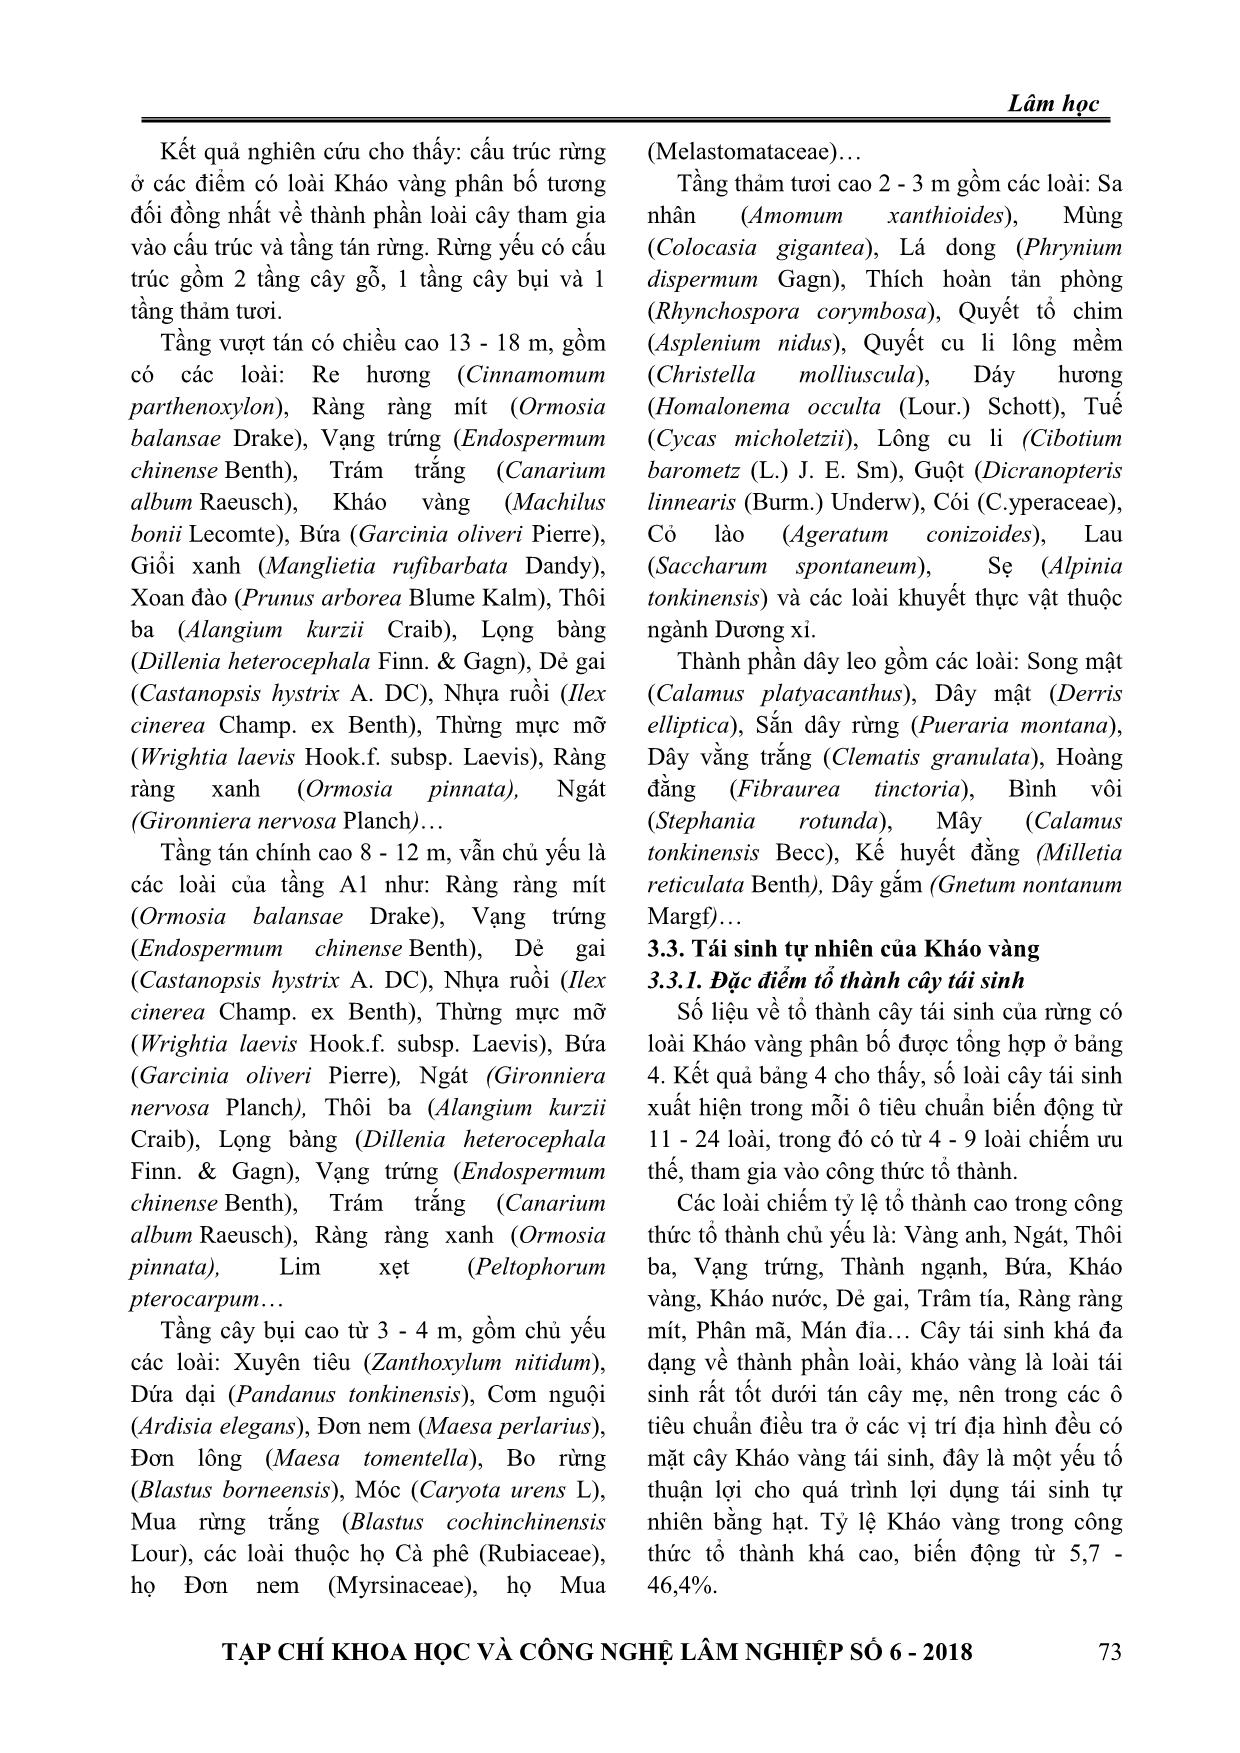 Một số đặc điểm lâm học loài kháo vàng (machilus bonii lecomte) tại tỉnh Thái Nguyên trang 5